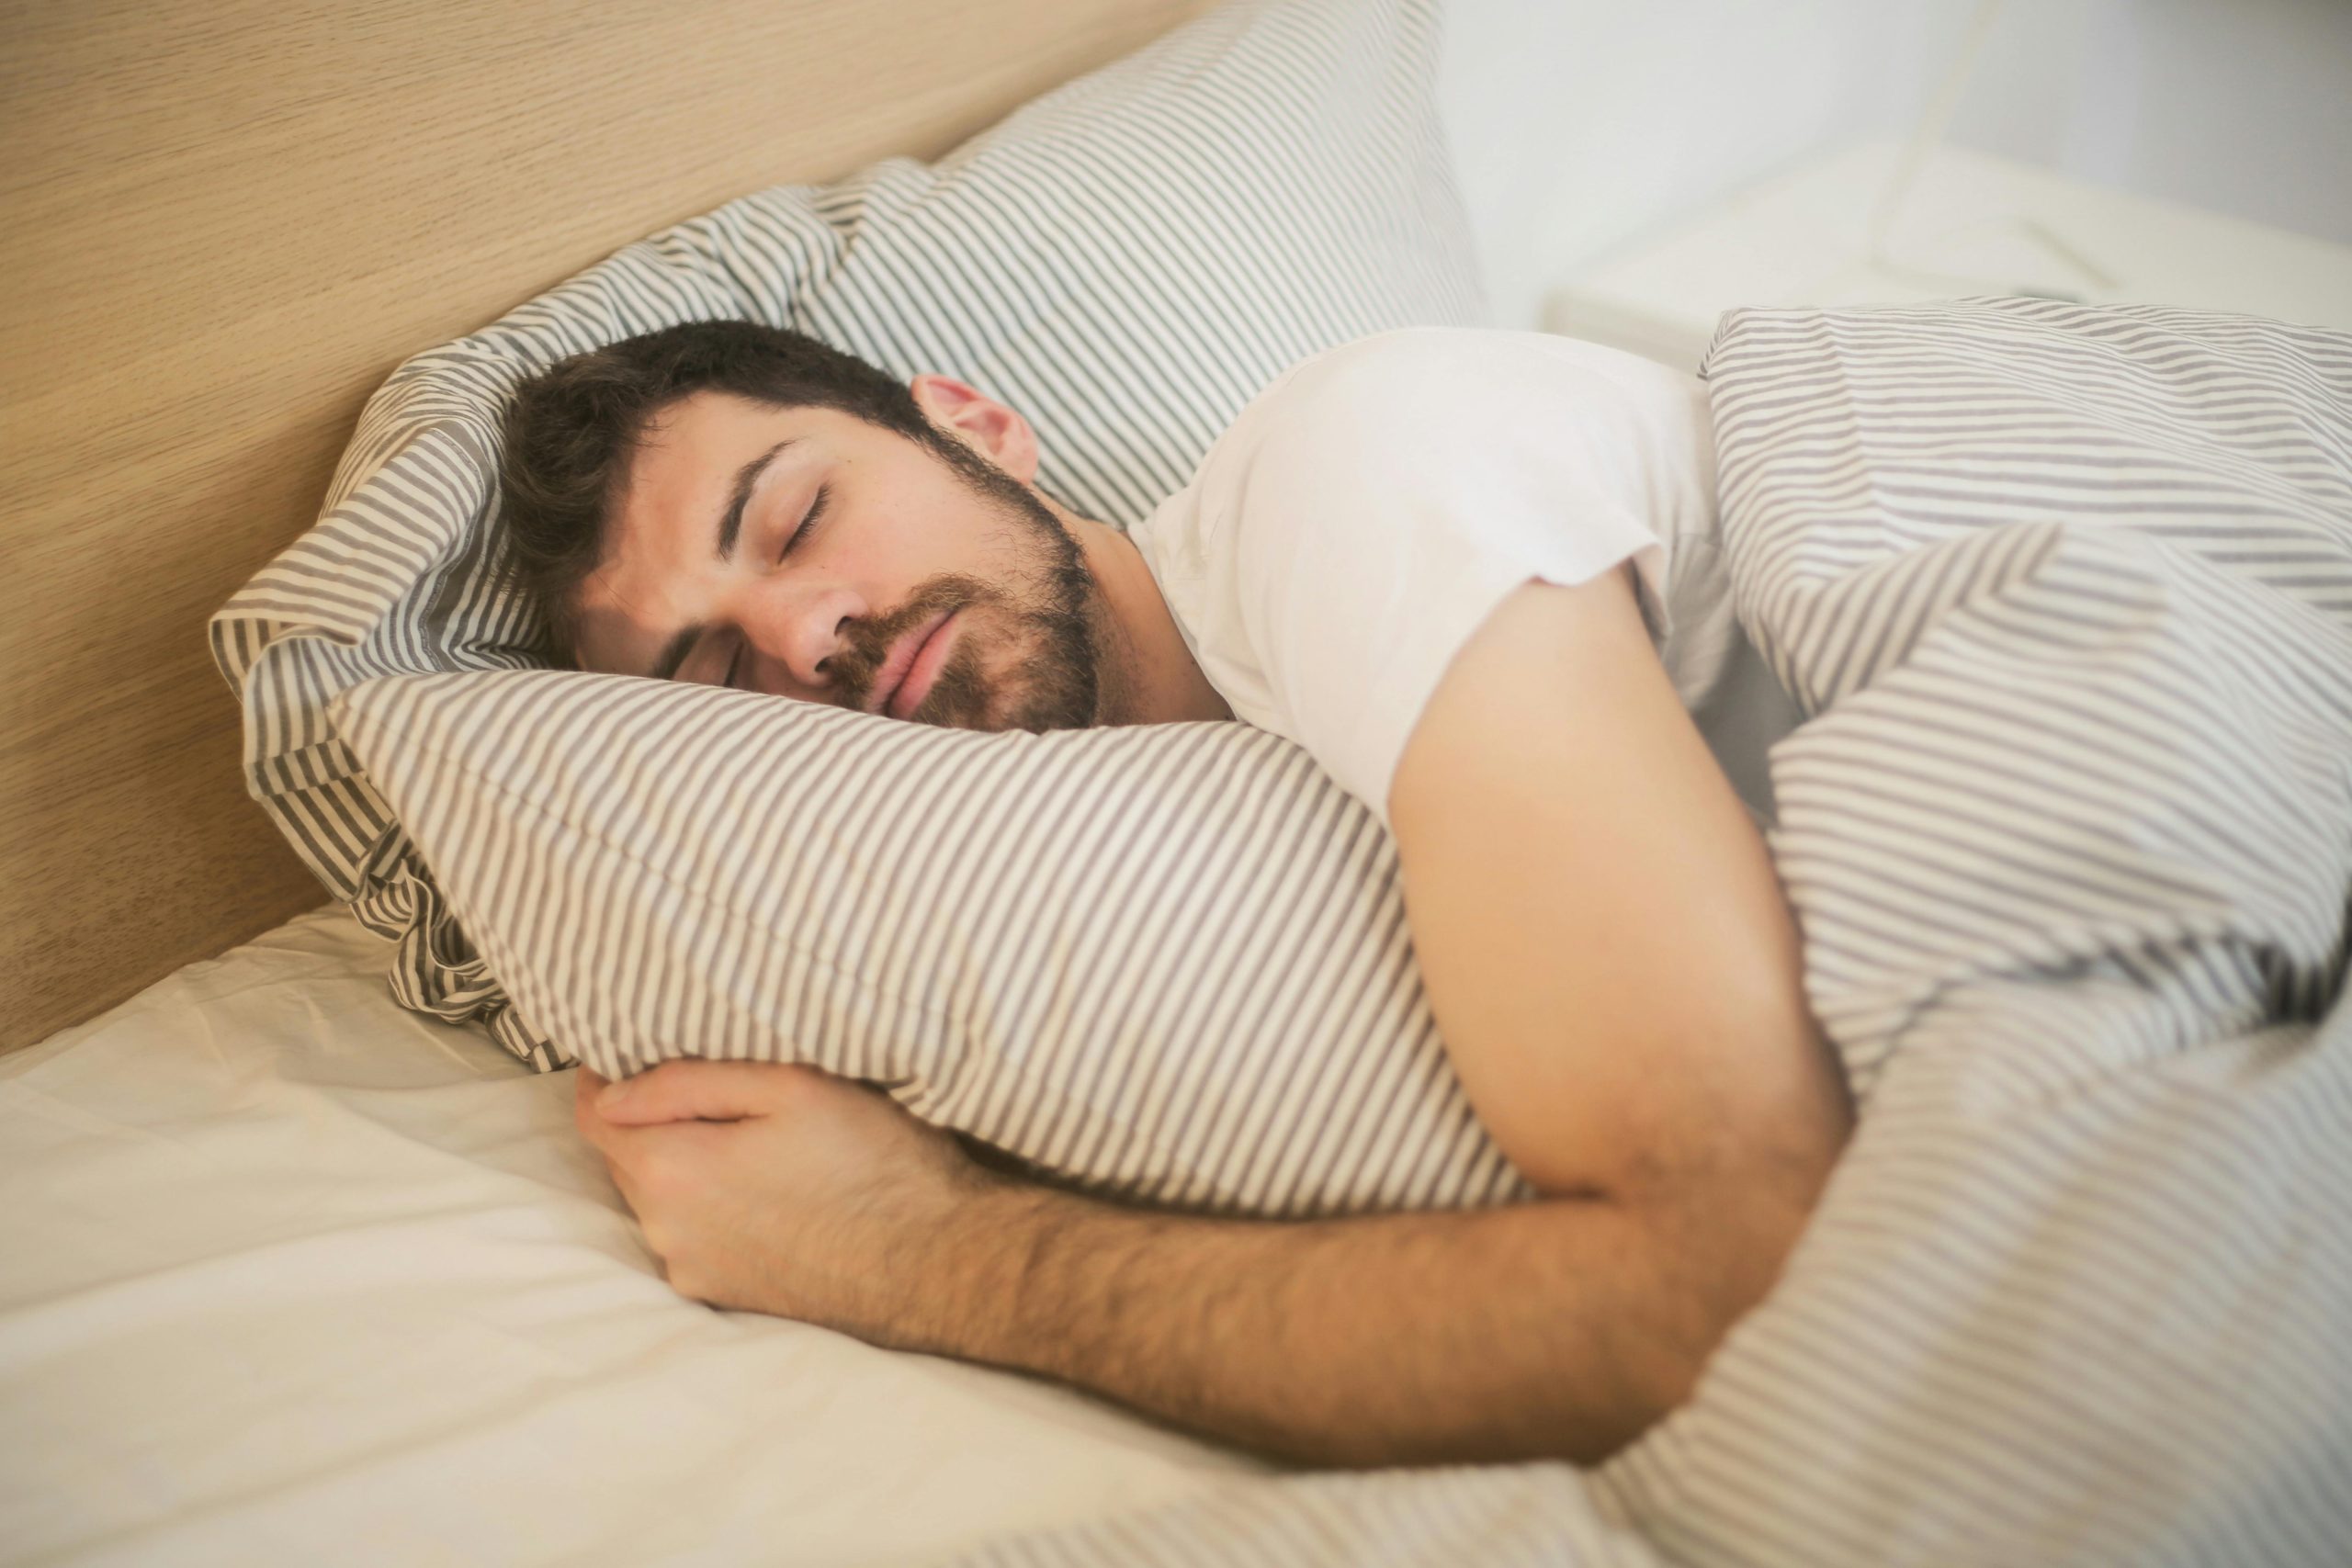 Lời khuyên của chuyên gia để có giấc ngủ tốt hơn